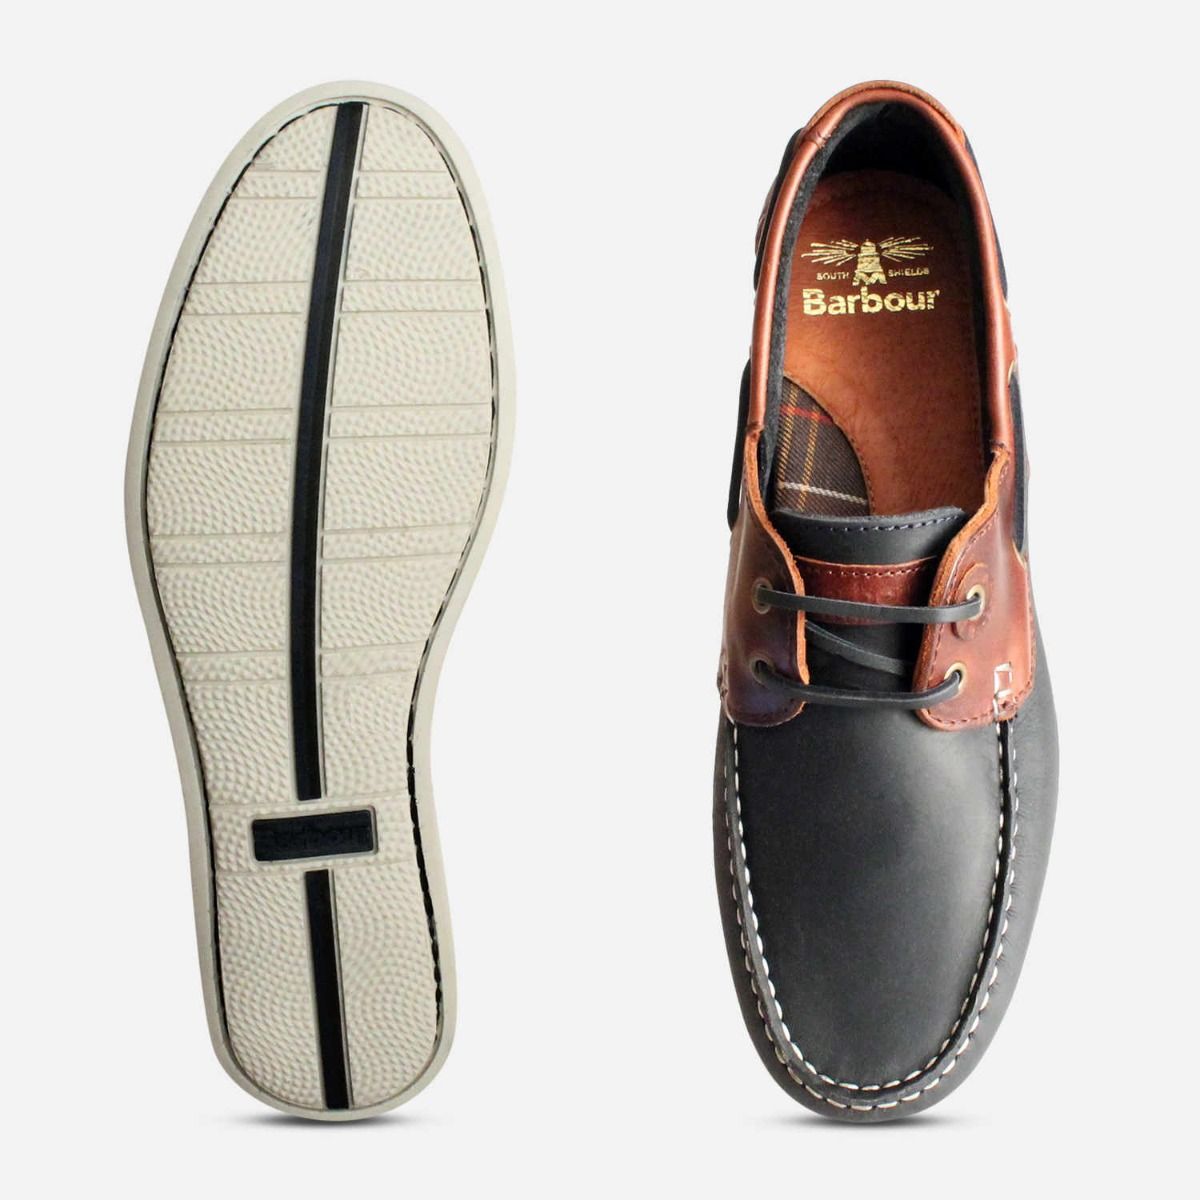 barbour capstan deck shoes